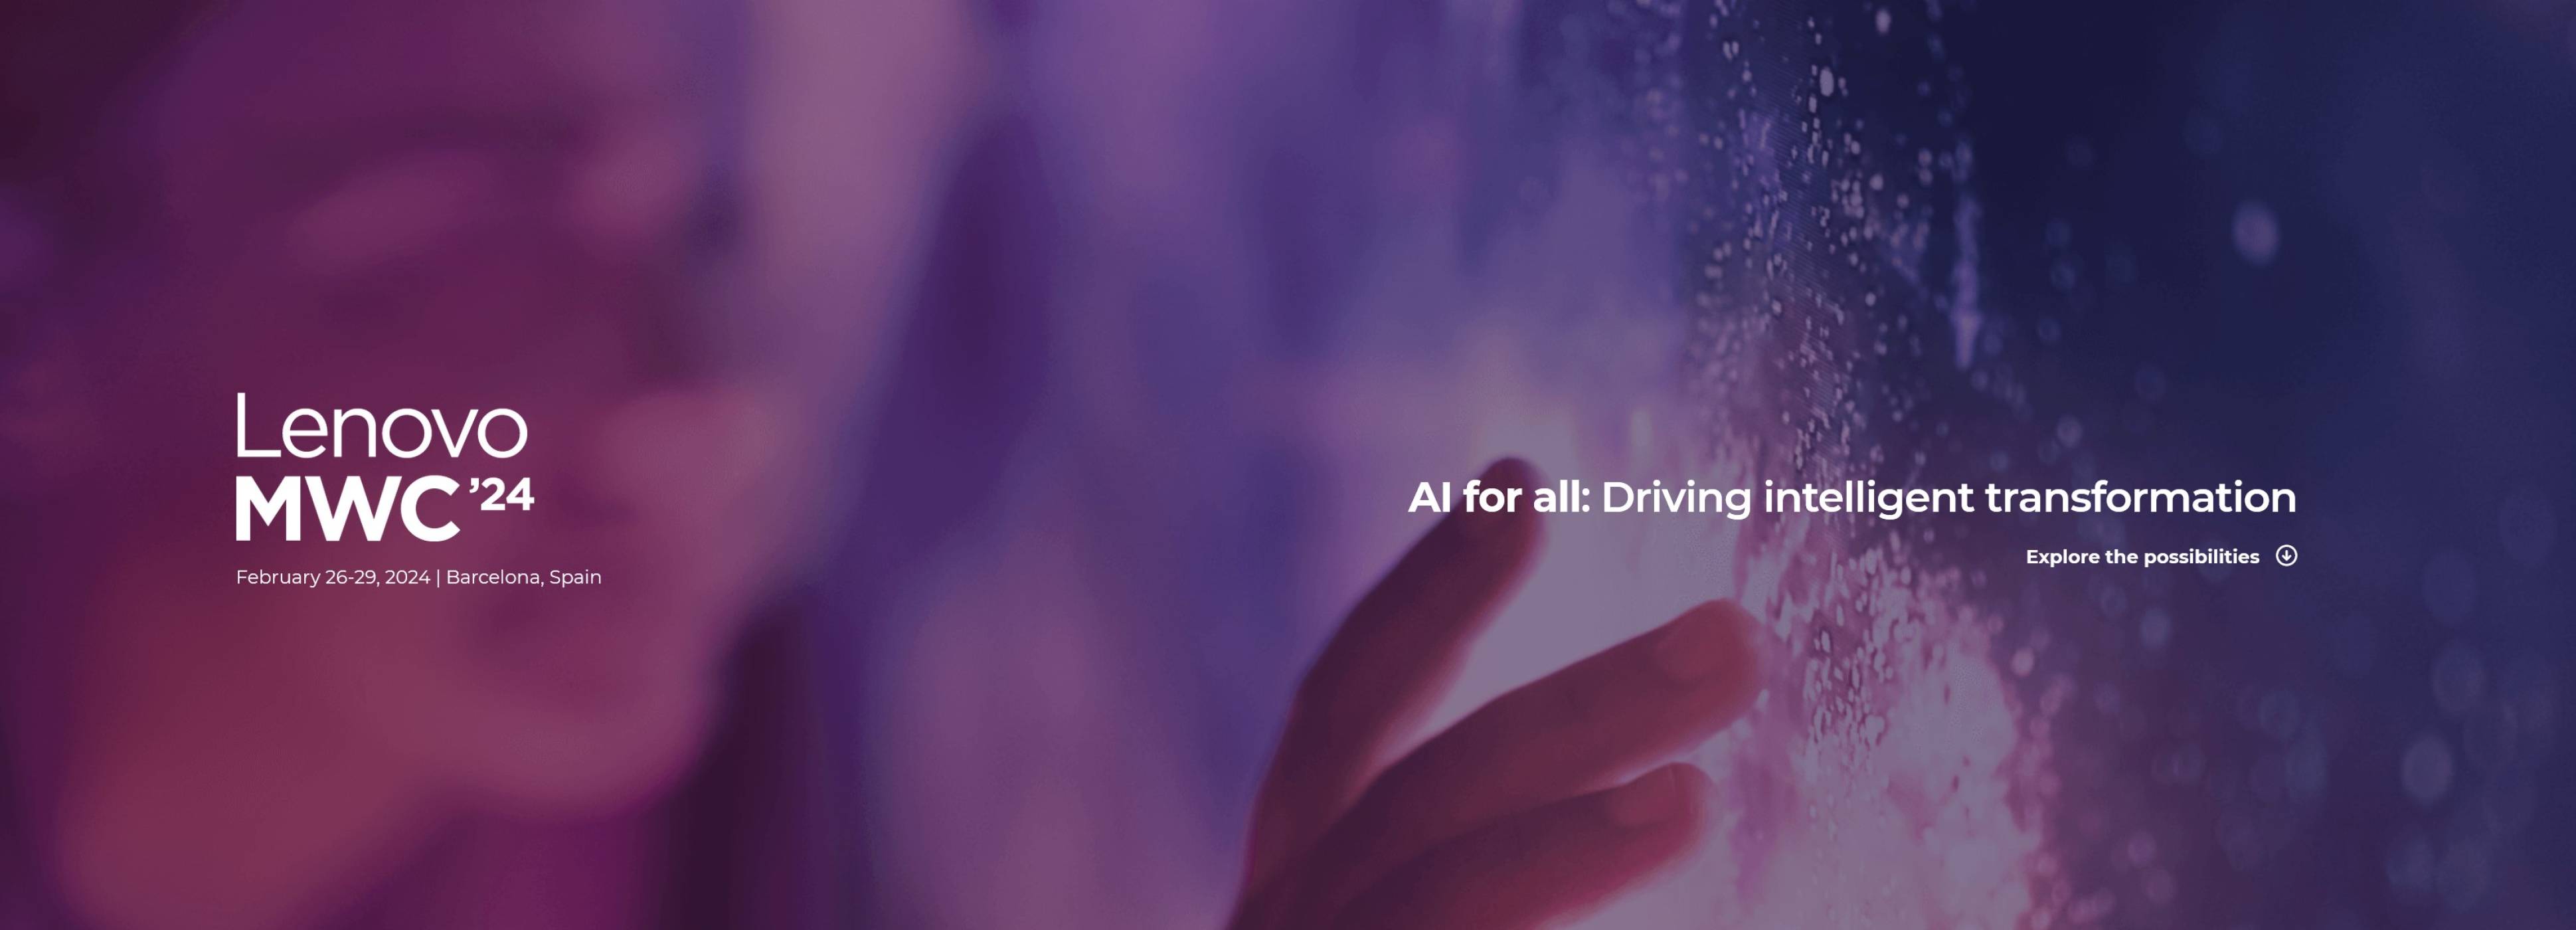 Lenovo представи новаторски продукти и решения, създадени да предоставят AI for All на MWC 2024  